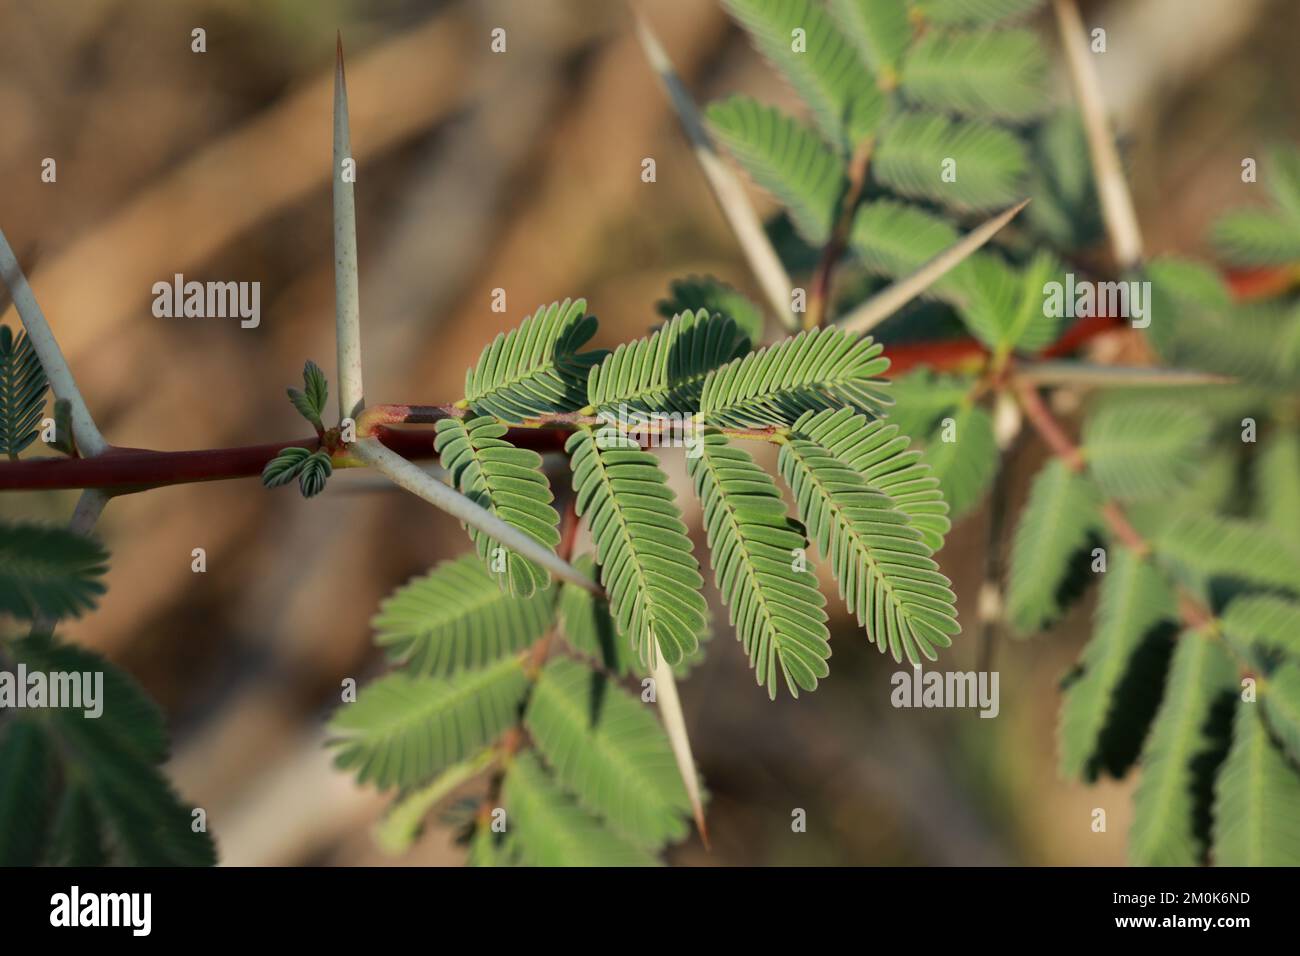 Gum arabic tree, Vachellia nilotica, Acacia nilotica, Babul, Thorn mimosa, Egyptian acacia, Thorny acacia branch closeup. Stock Photo